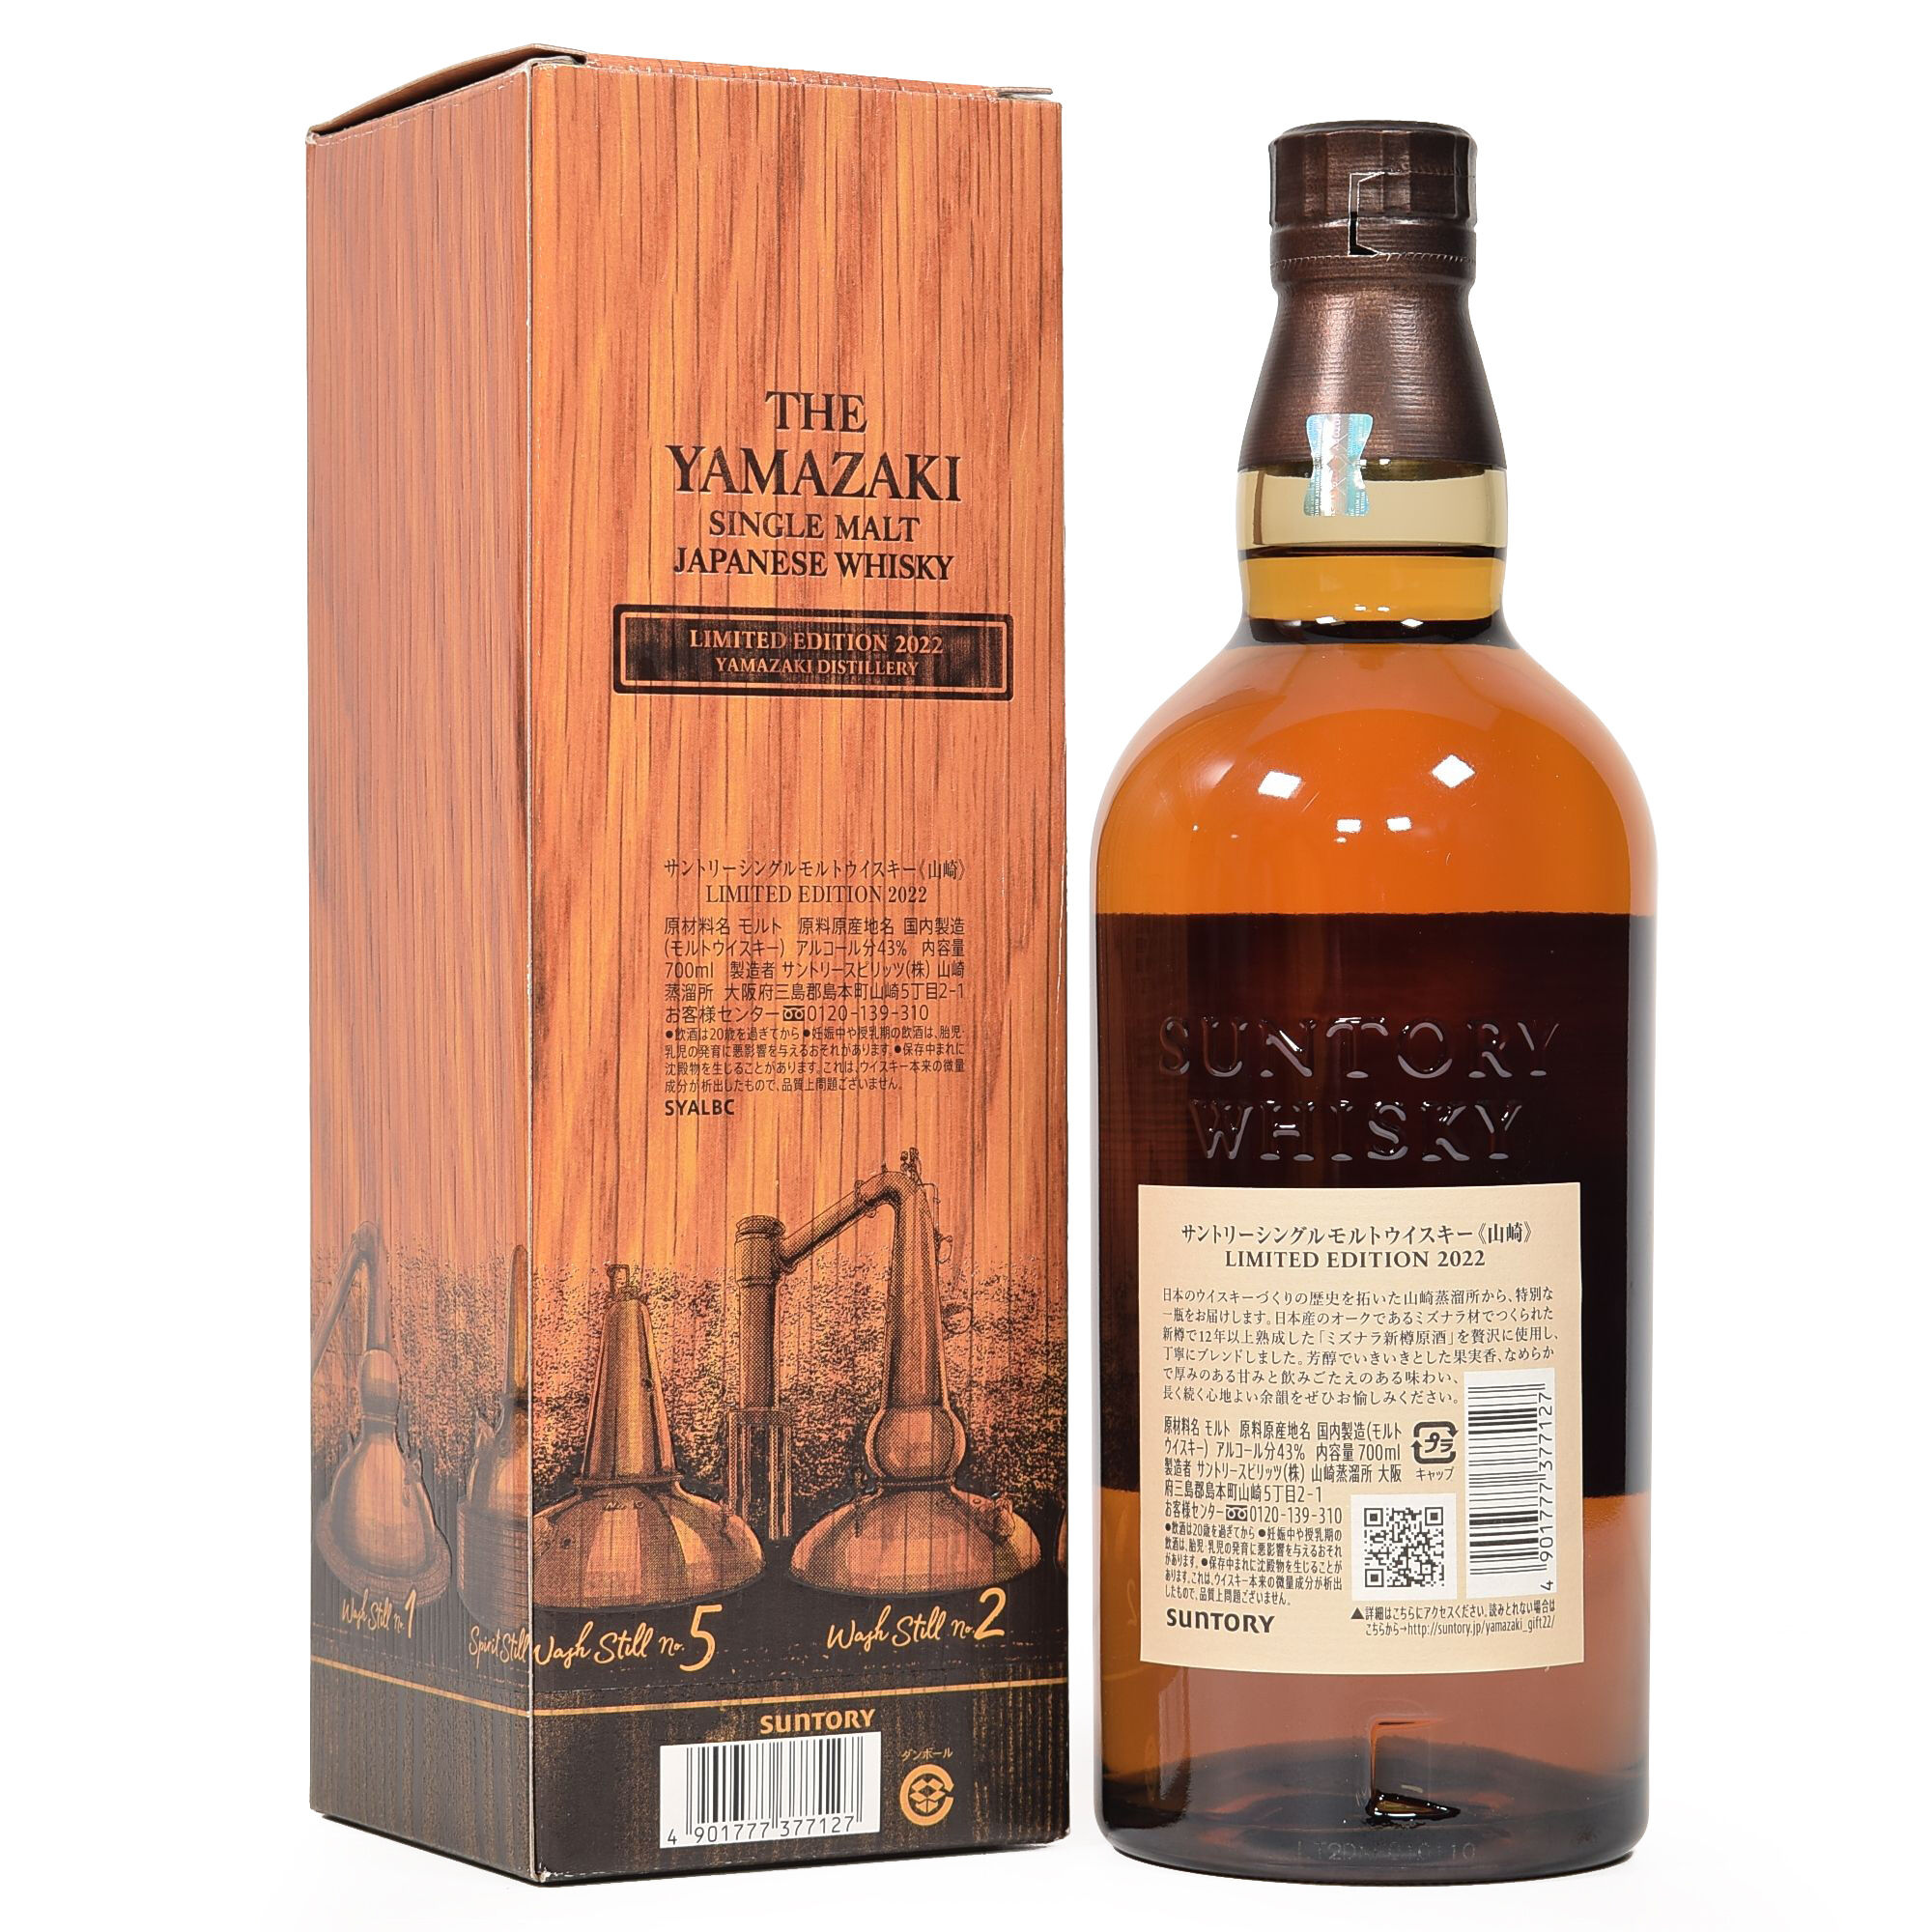 The Yamazaki Limited Edition 2022 Single Malt Japanese Whiskey